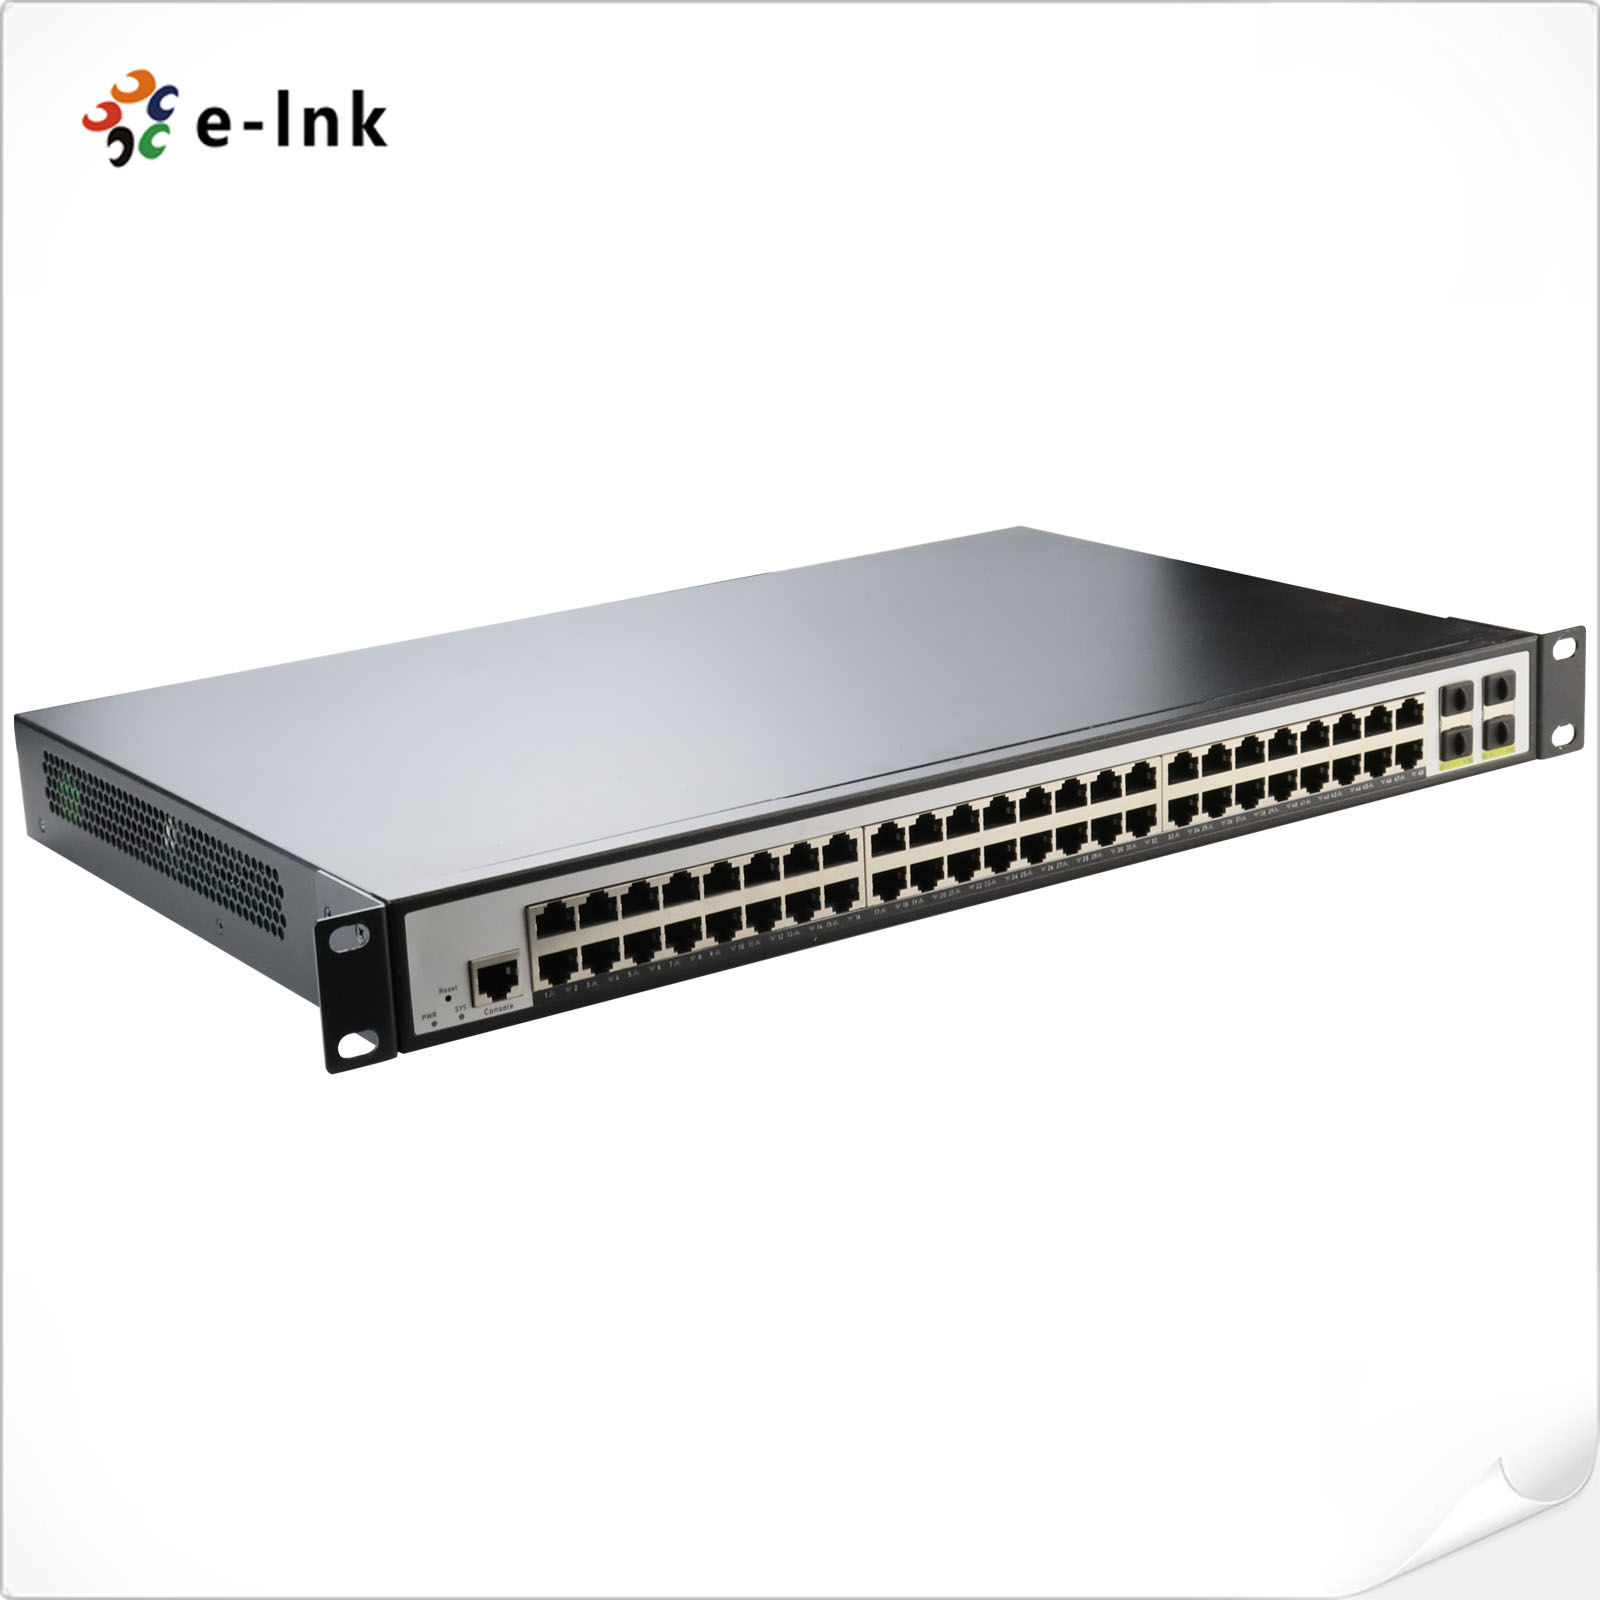 Commutateur réseau Ethernet RJ45 10 Mbit/s à 8 ports pour HDMI sur